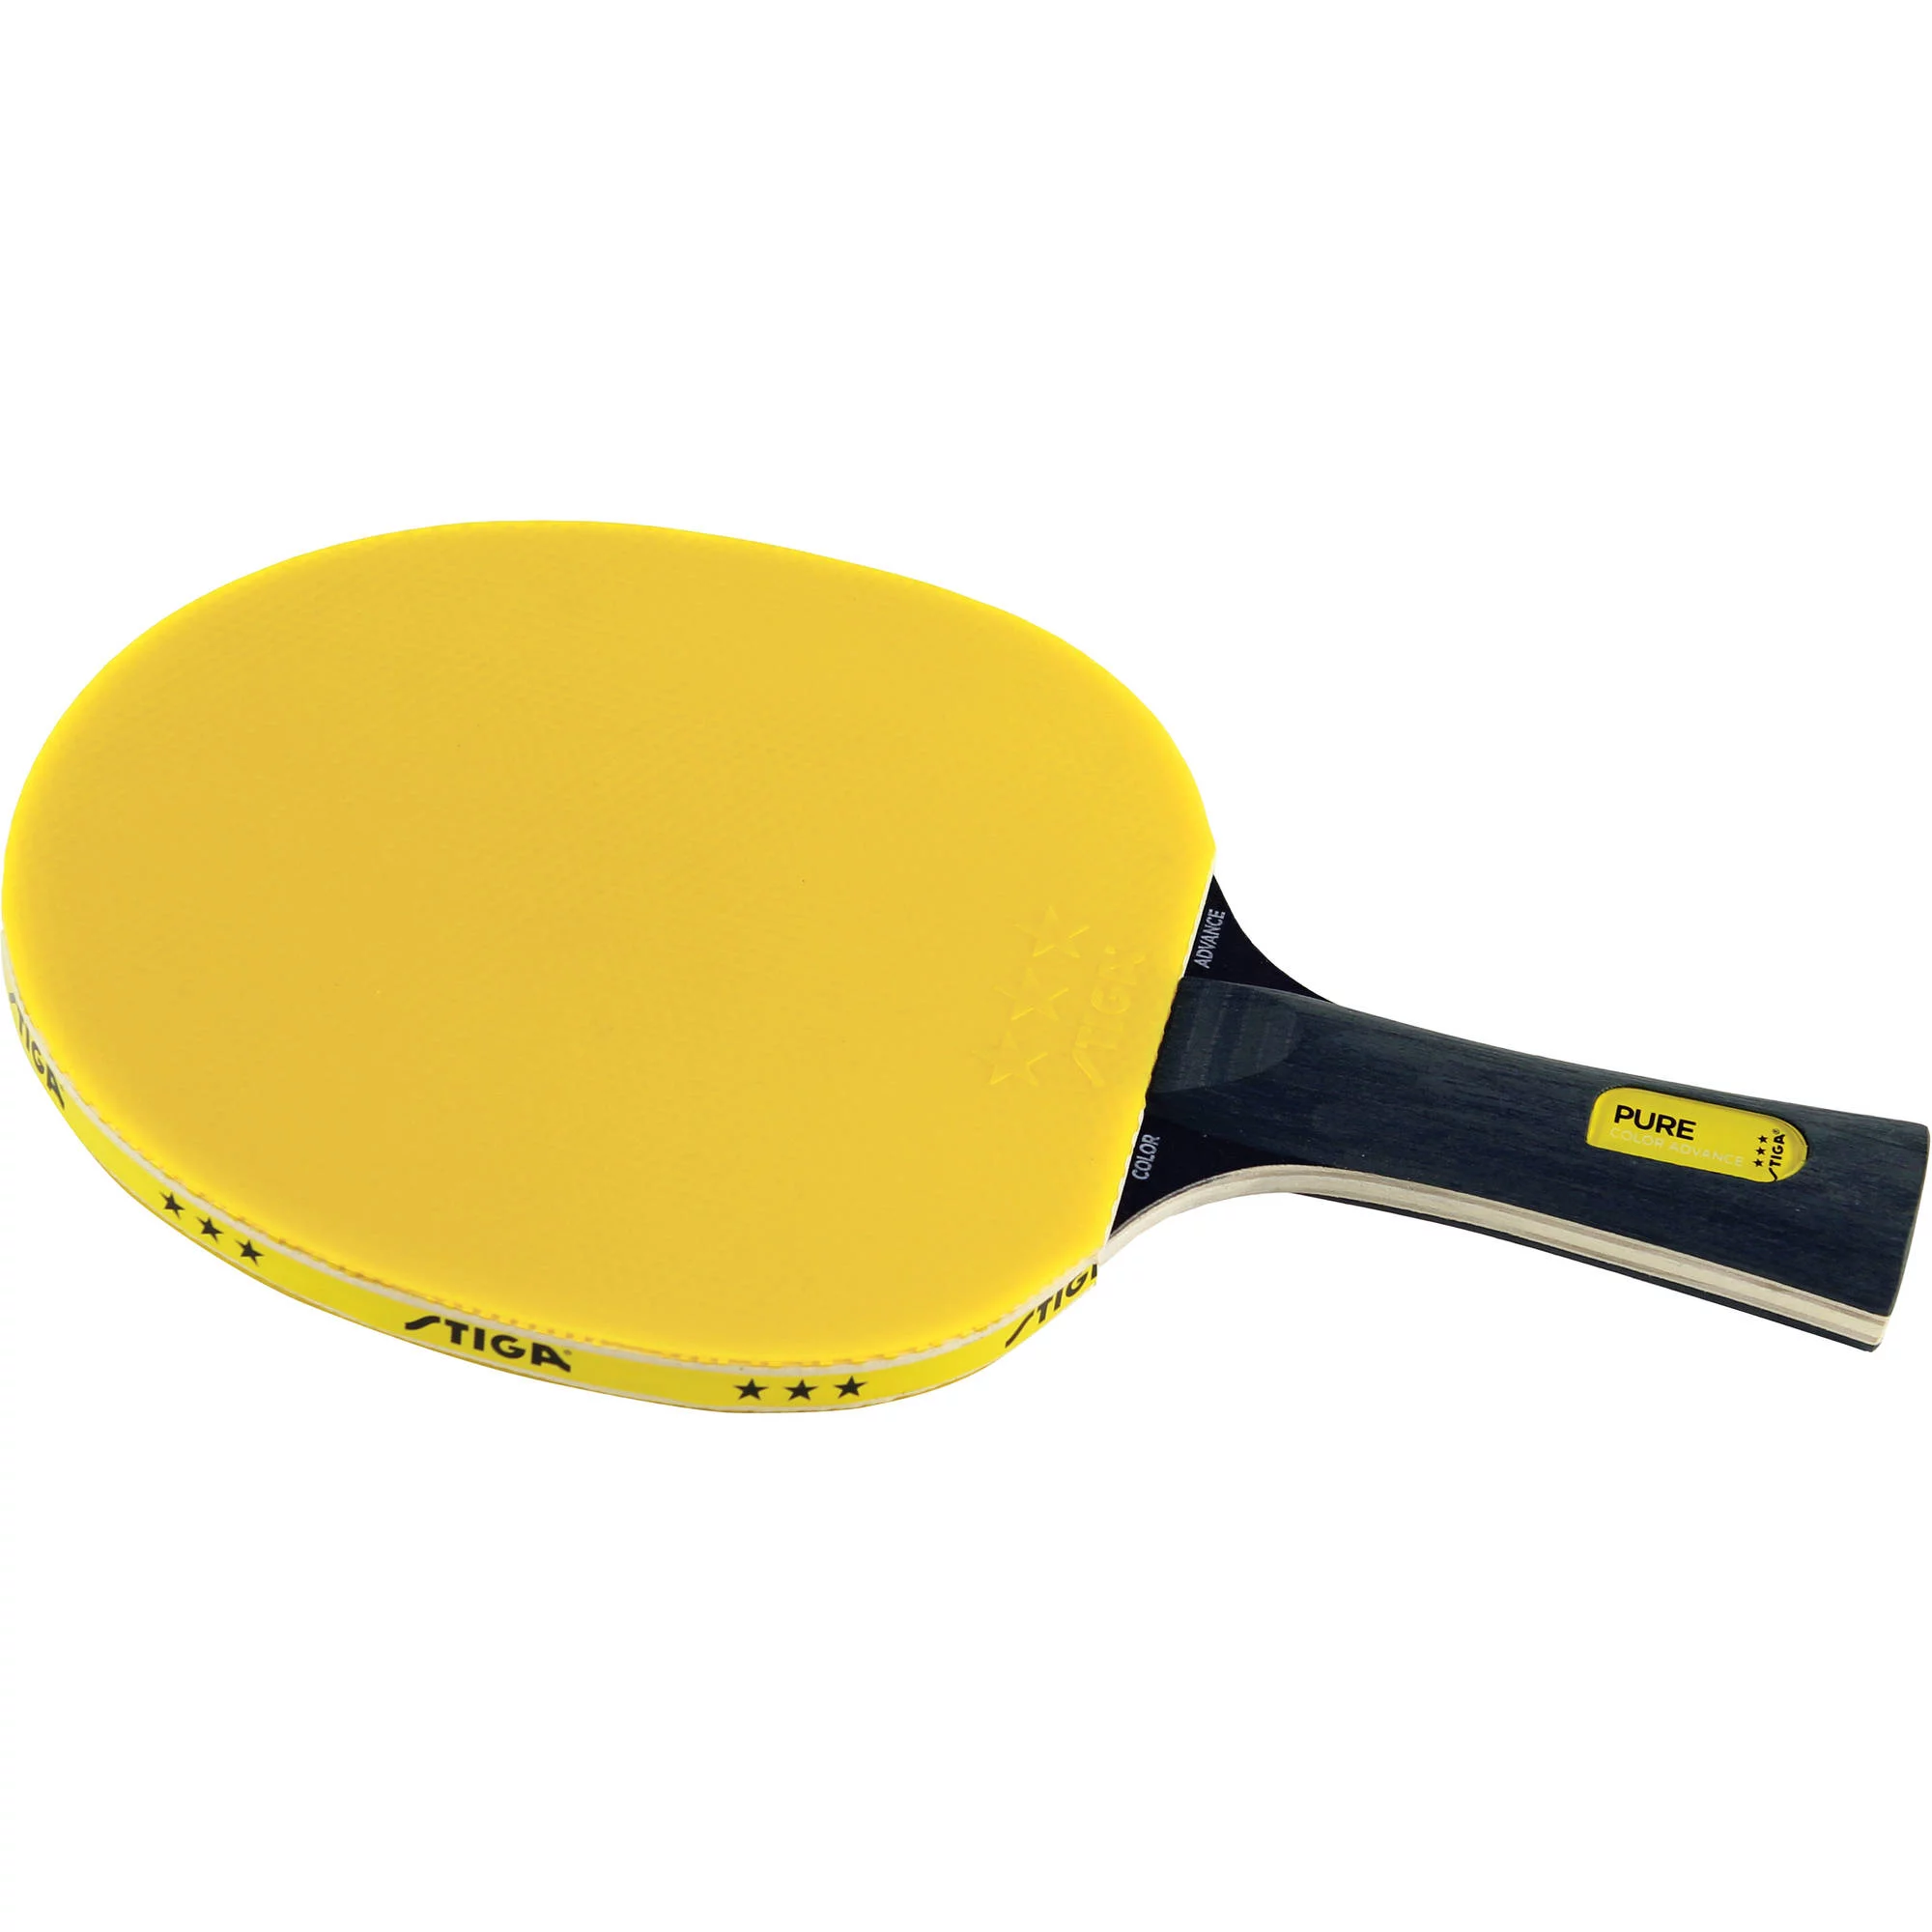 Detail Nike Ping Pong Paddle Nomer 13